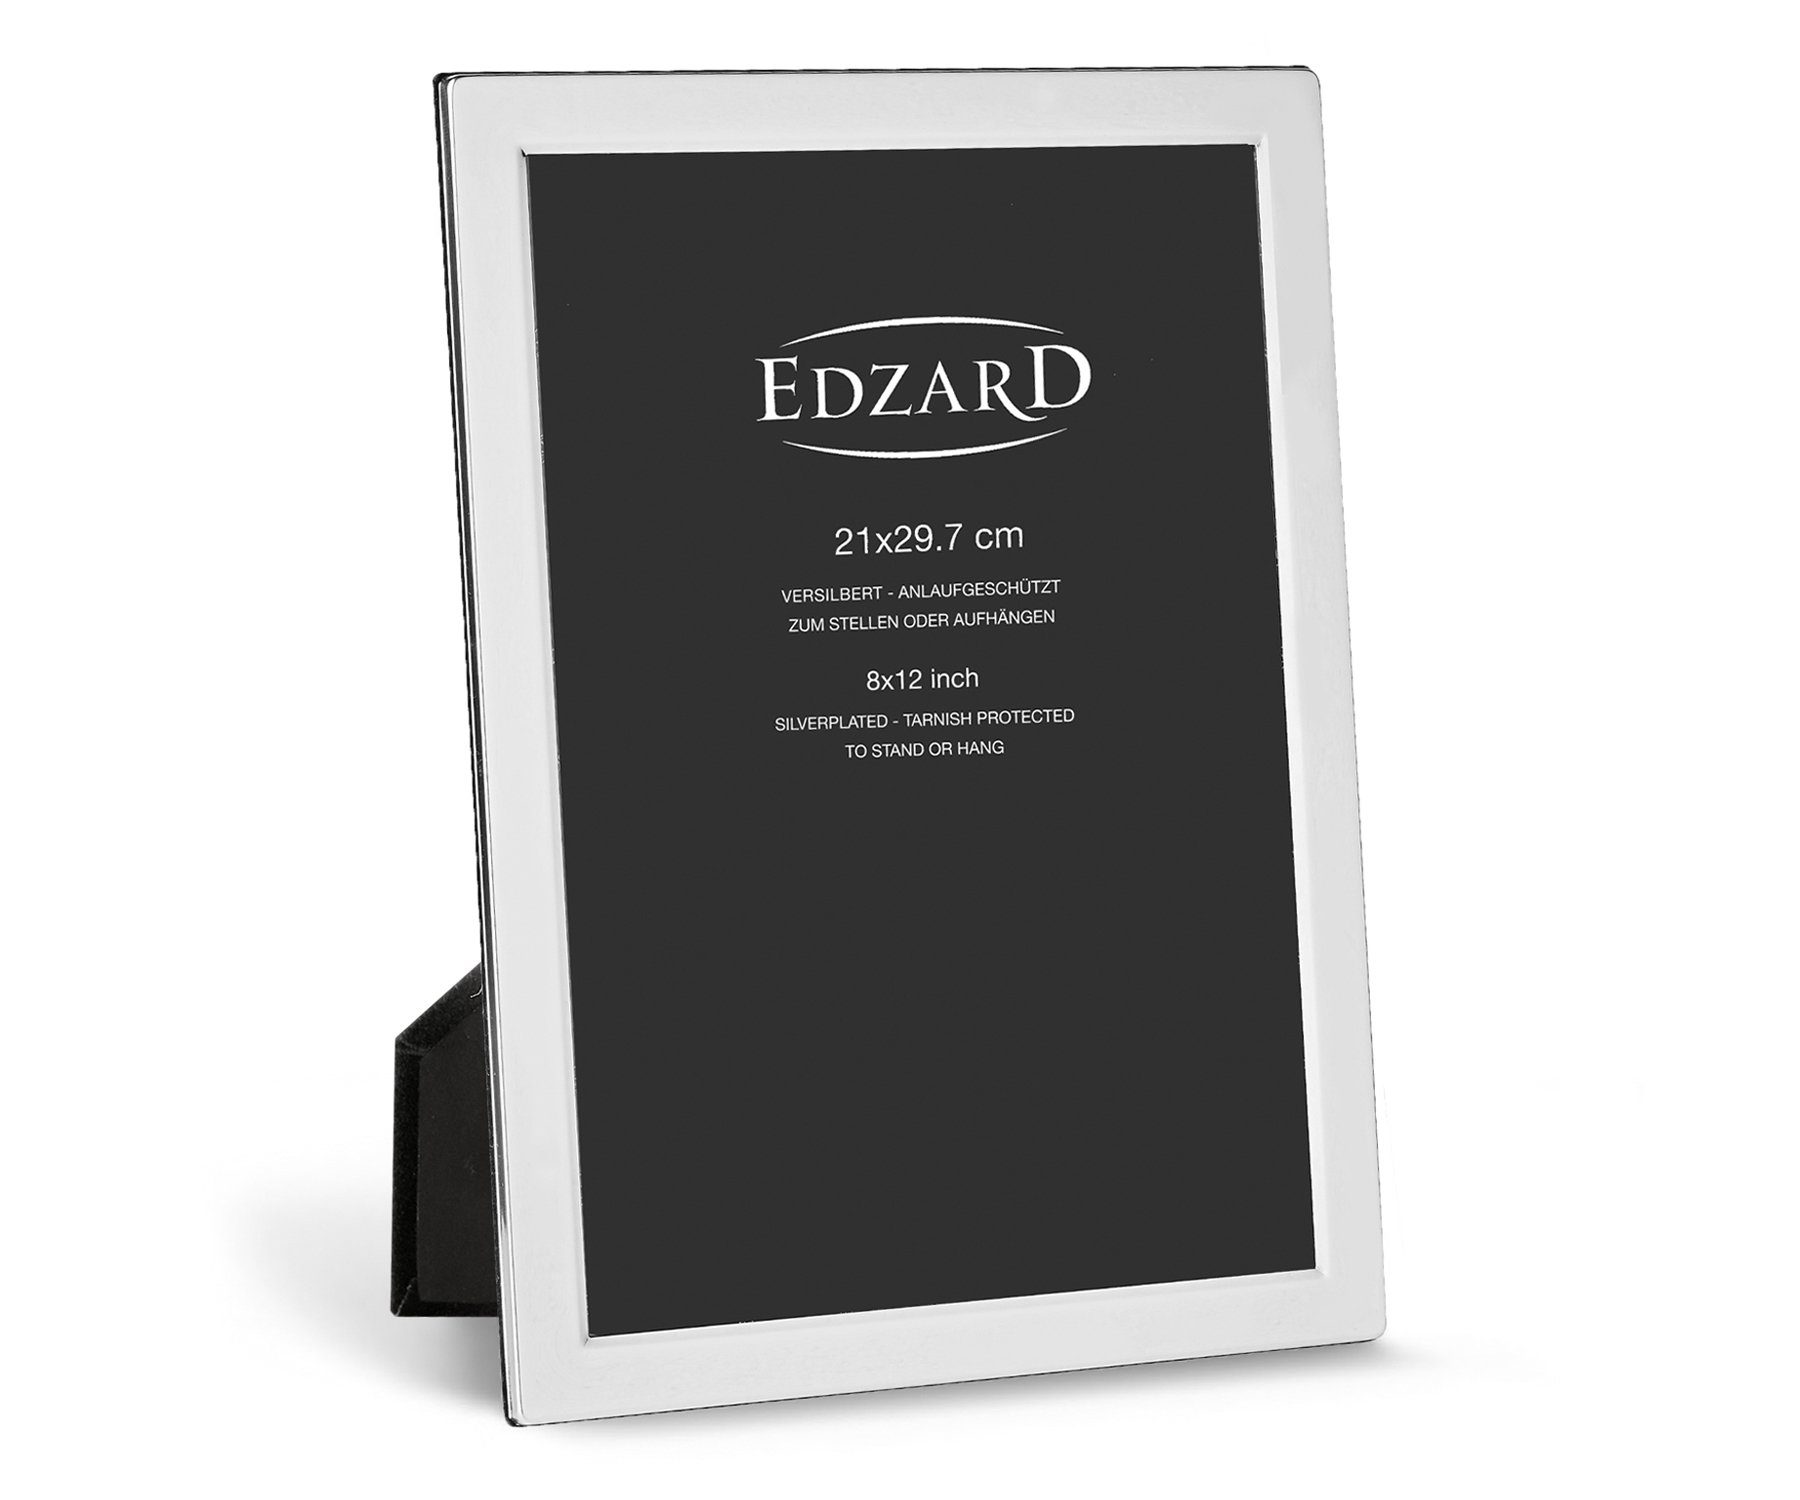 EDZARD Bilderrahmen Salerno, für 20x30 cm Foto (ca. A4) - edel versilberter & anlaufgeschützt